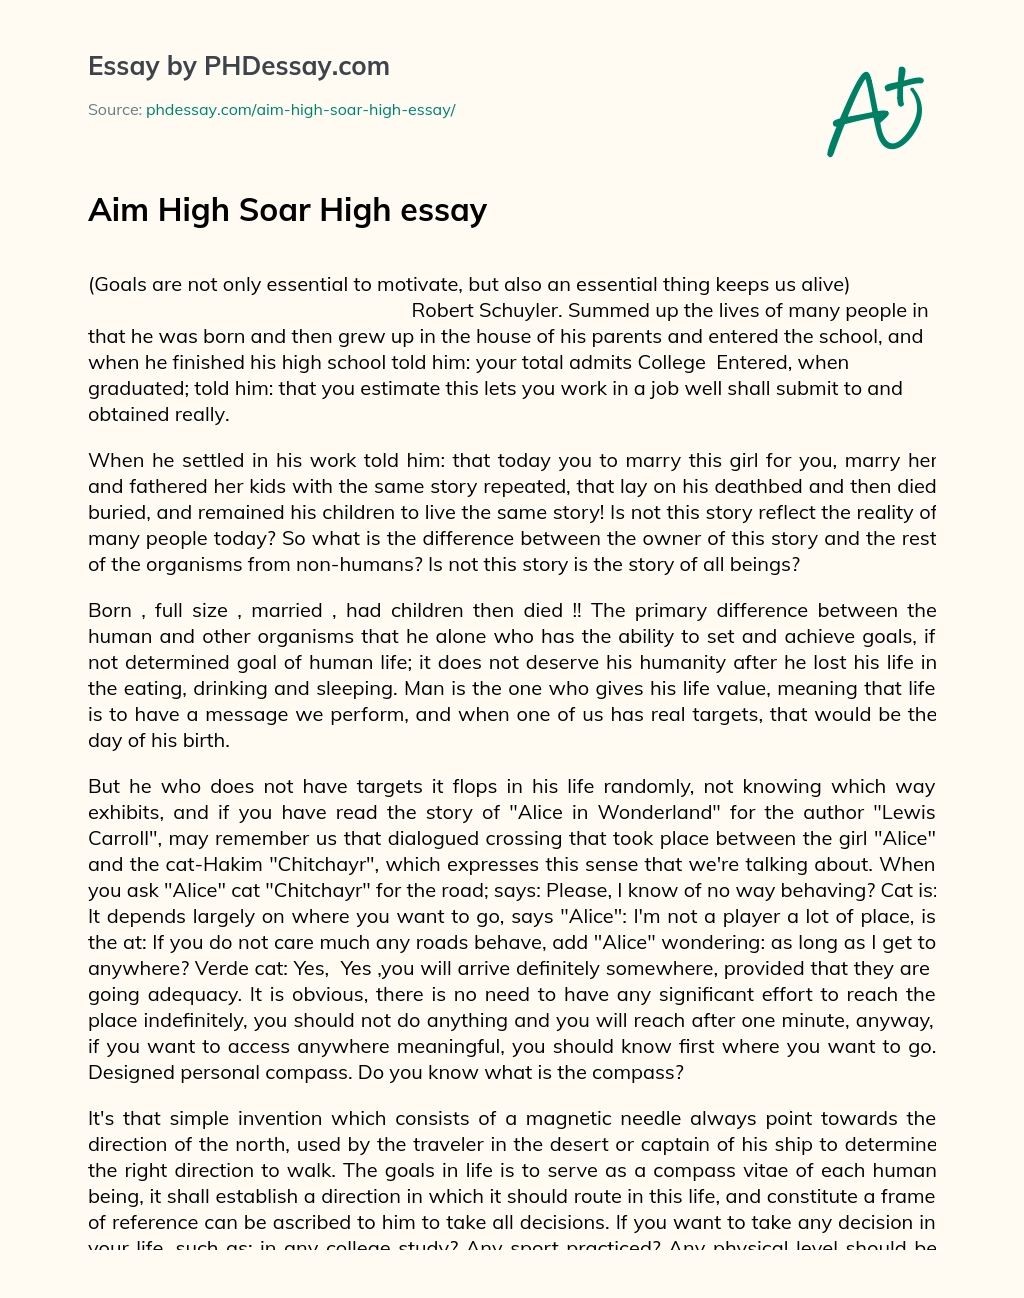 Aim High Soar High essay essay